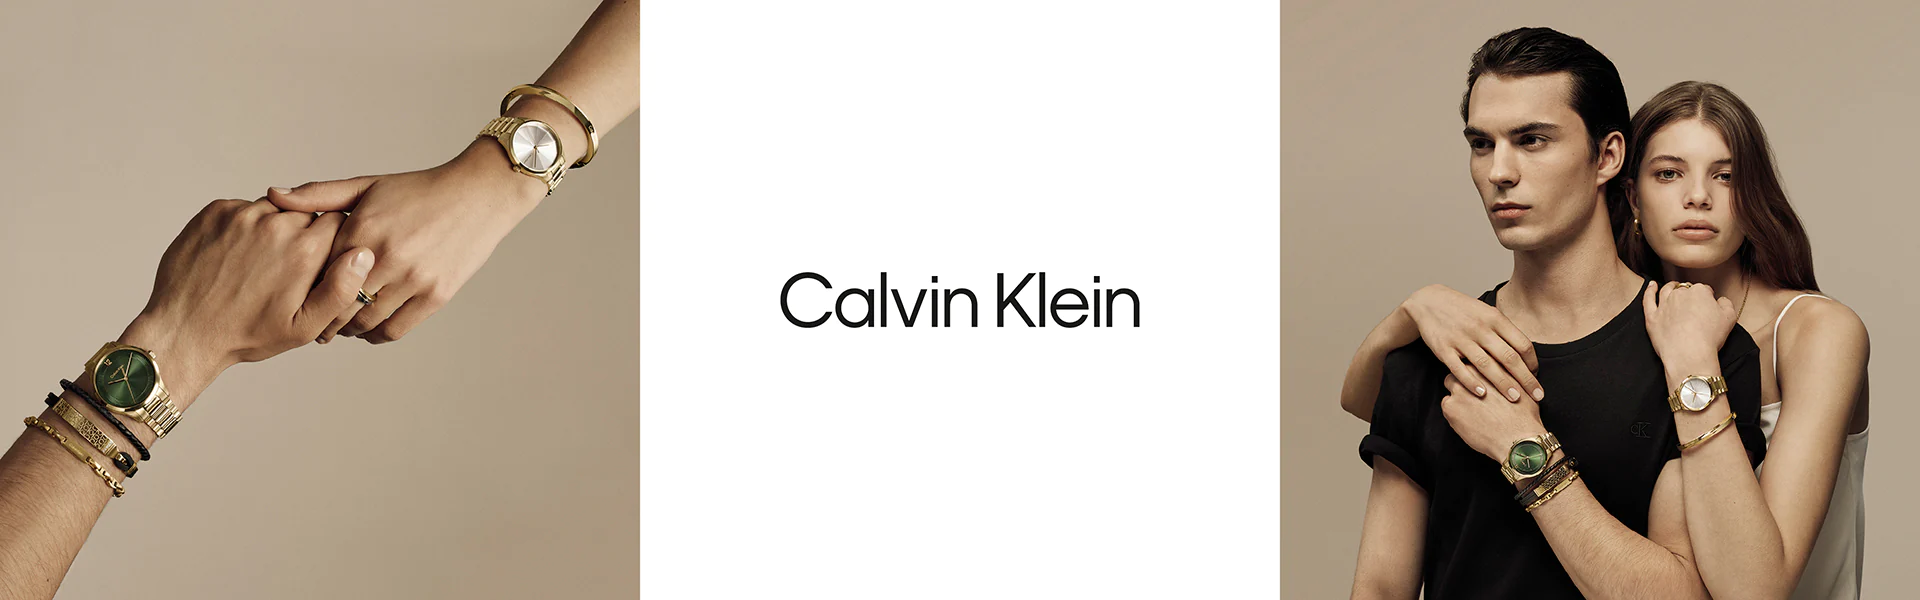 Bannieres de marque Calvin Klein